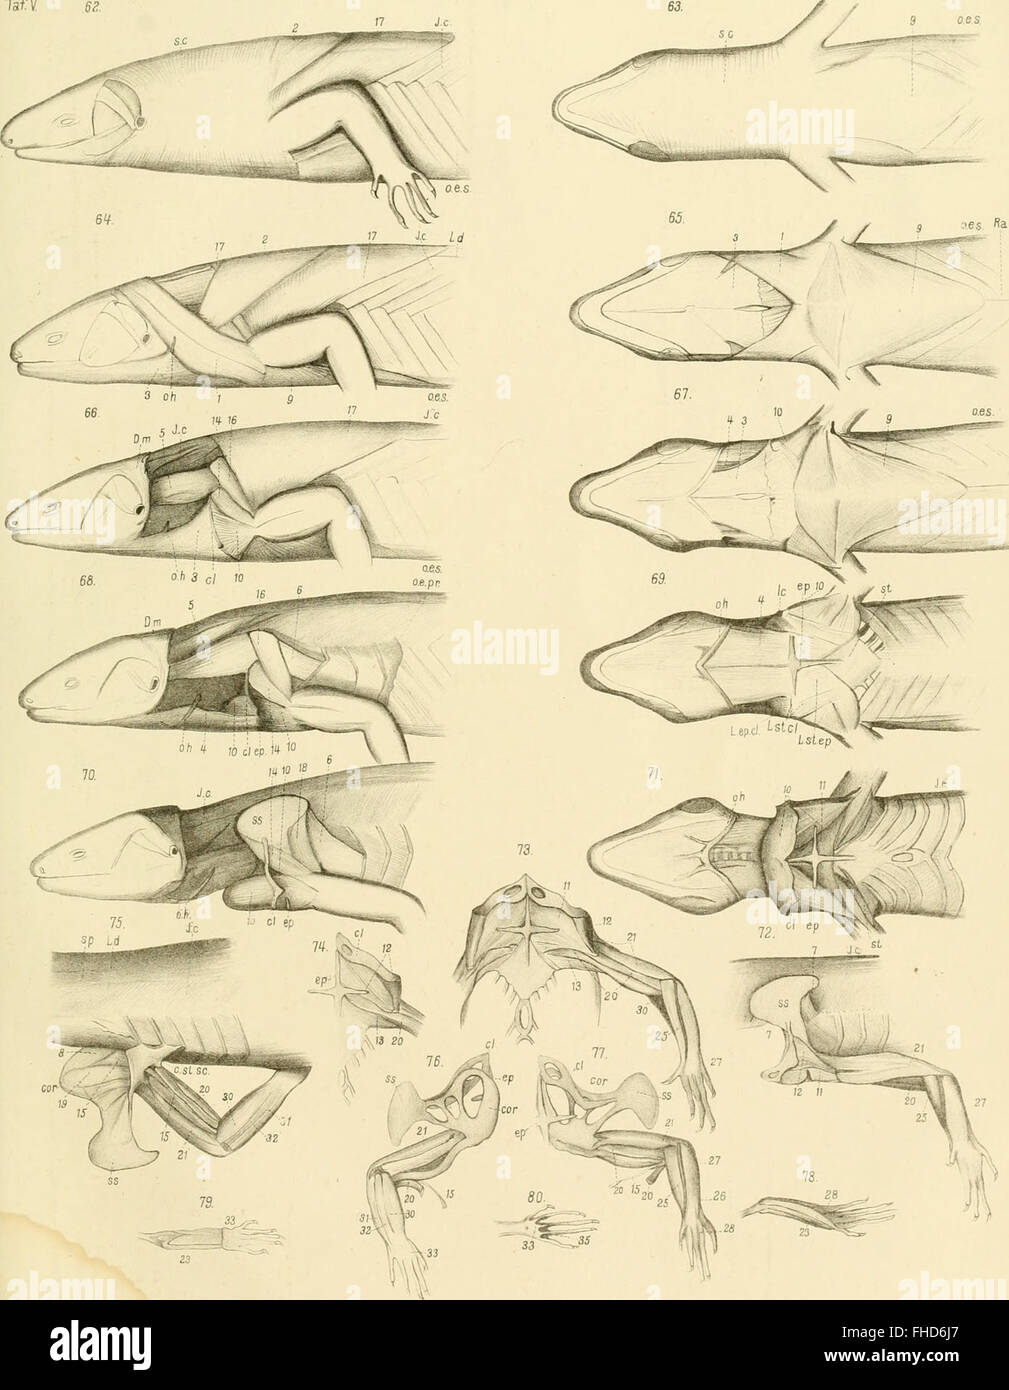 Die Knochen und Muskeln der Extremitaten bei den schlangenC383C2A4hnlichen Sauri (1870) Foto Stock